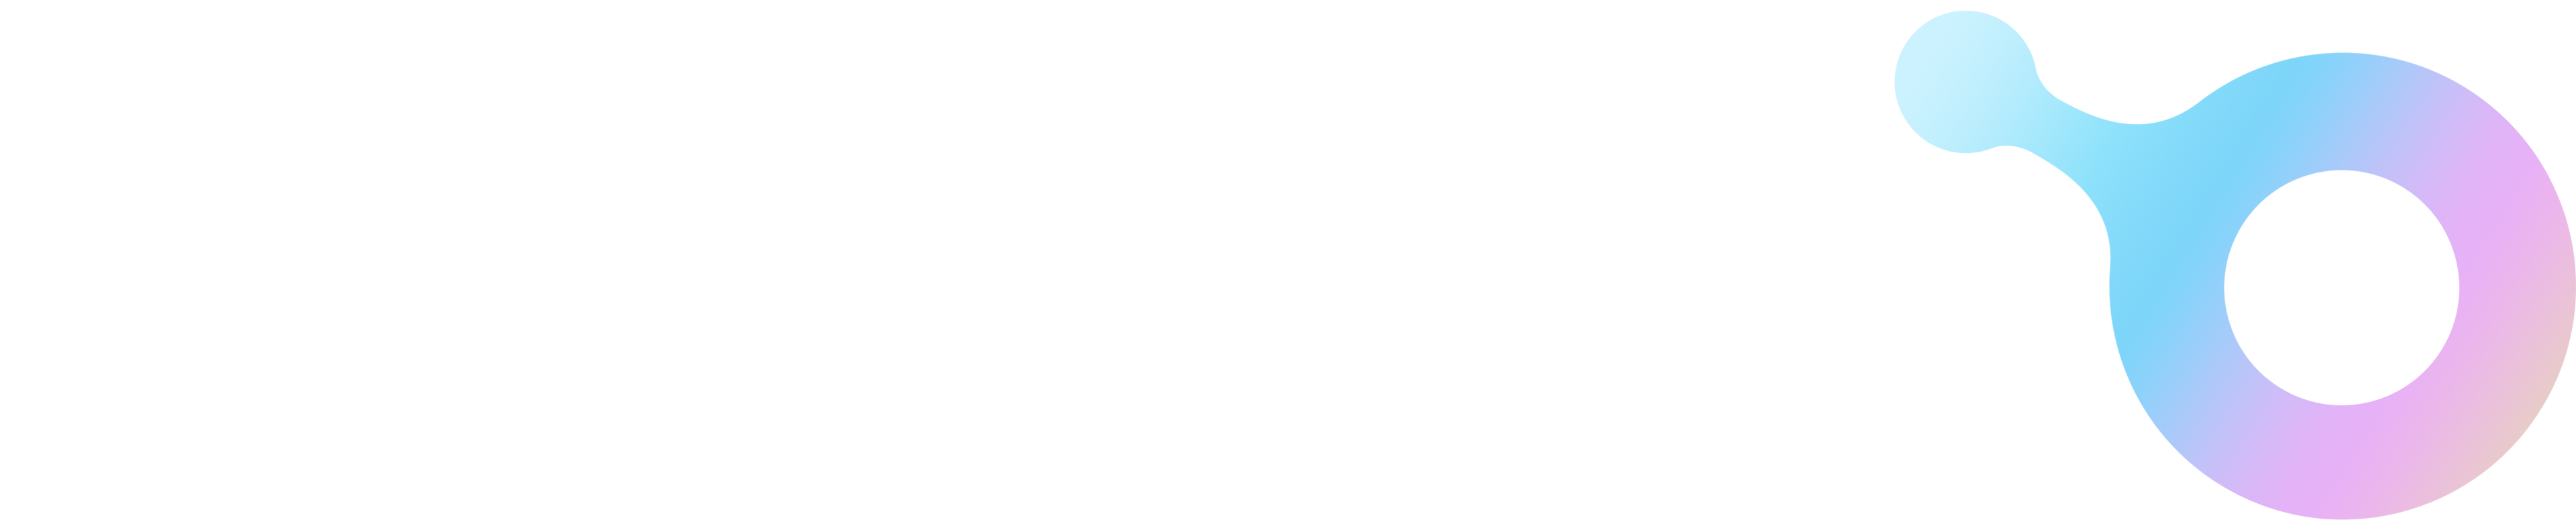 Xterio logo